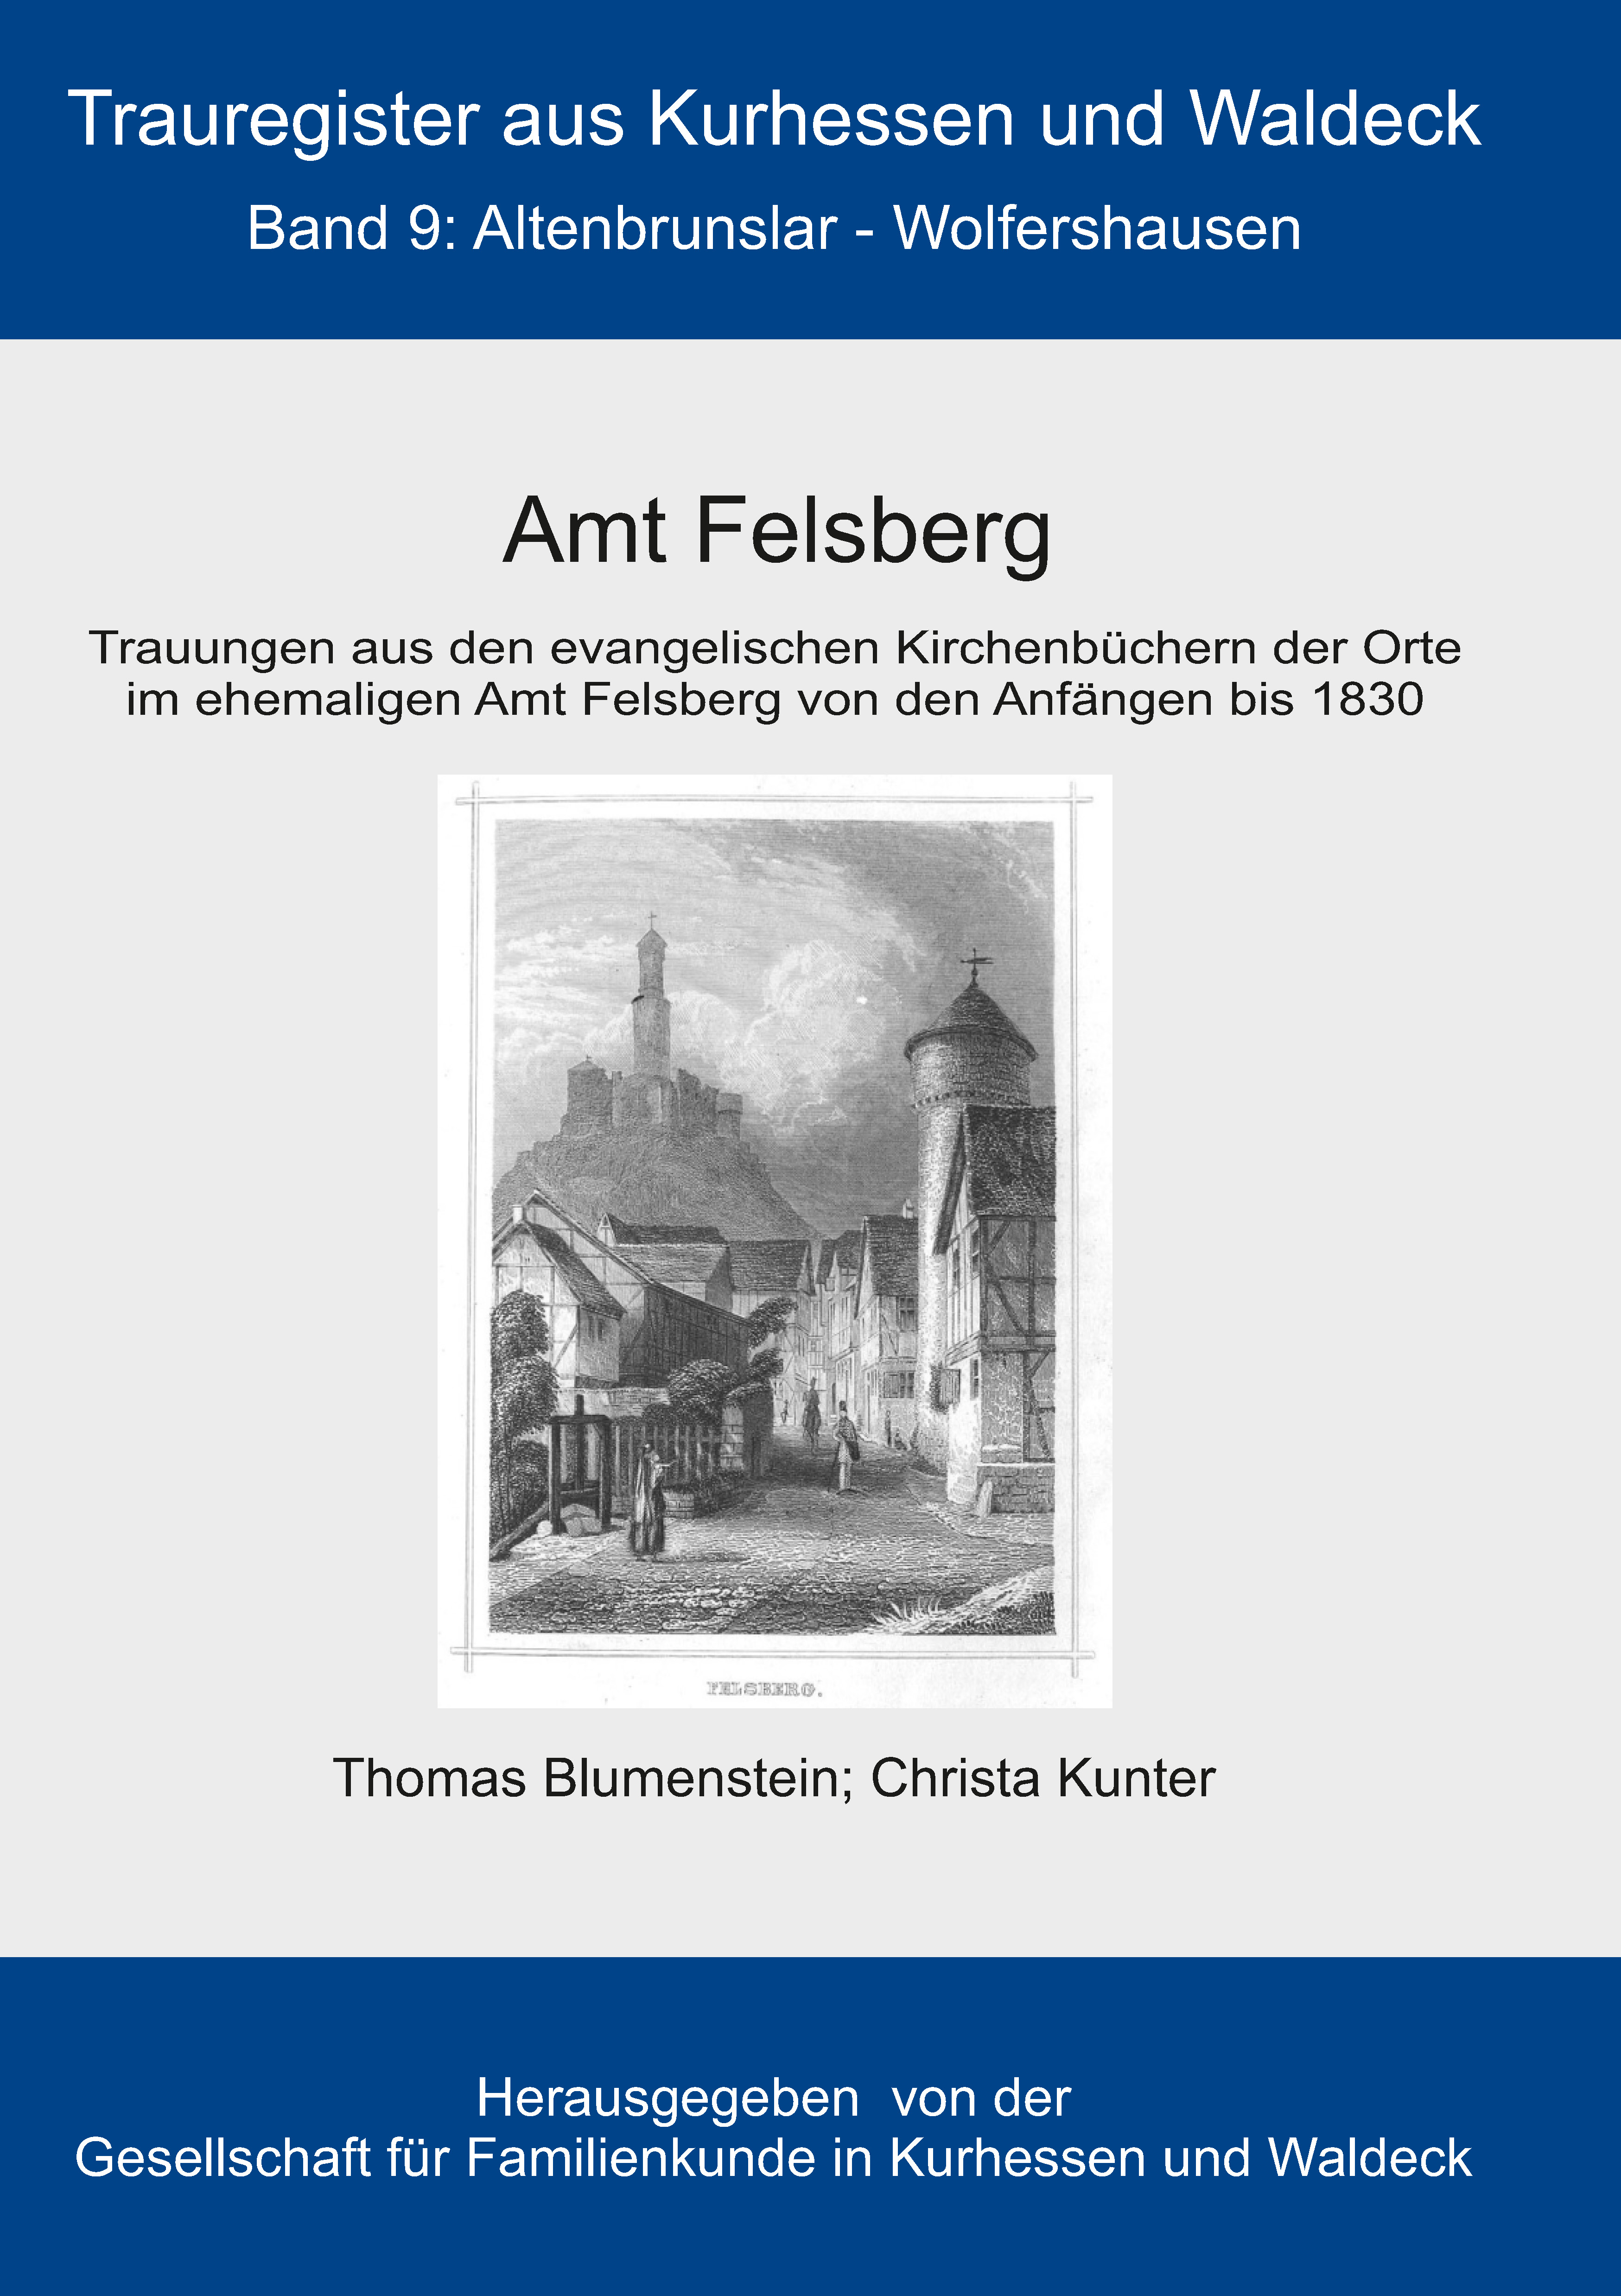 Trauregister aus Kurhessen und Waldeck, Band 9 Amt Felsberg